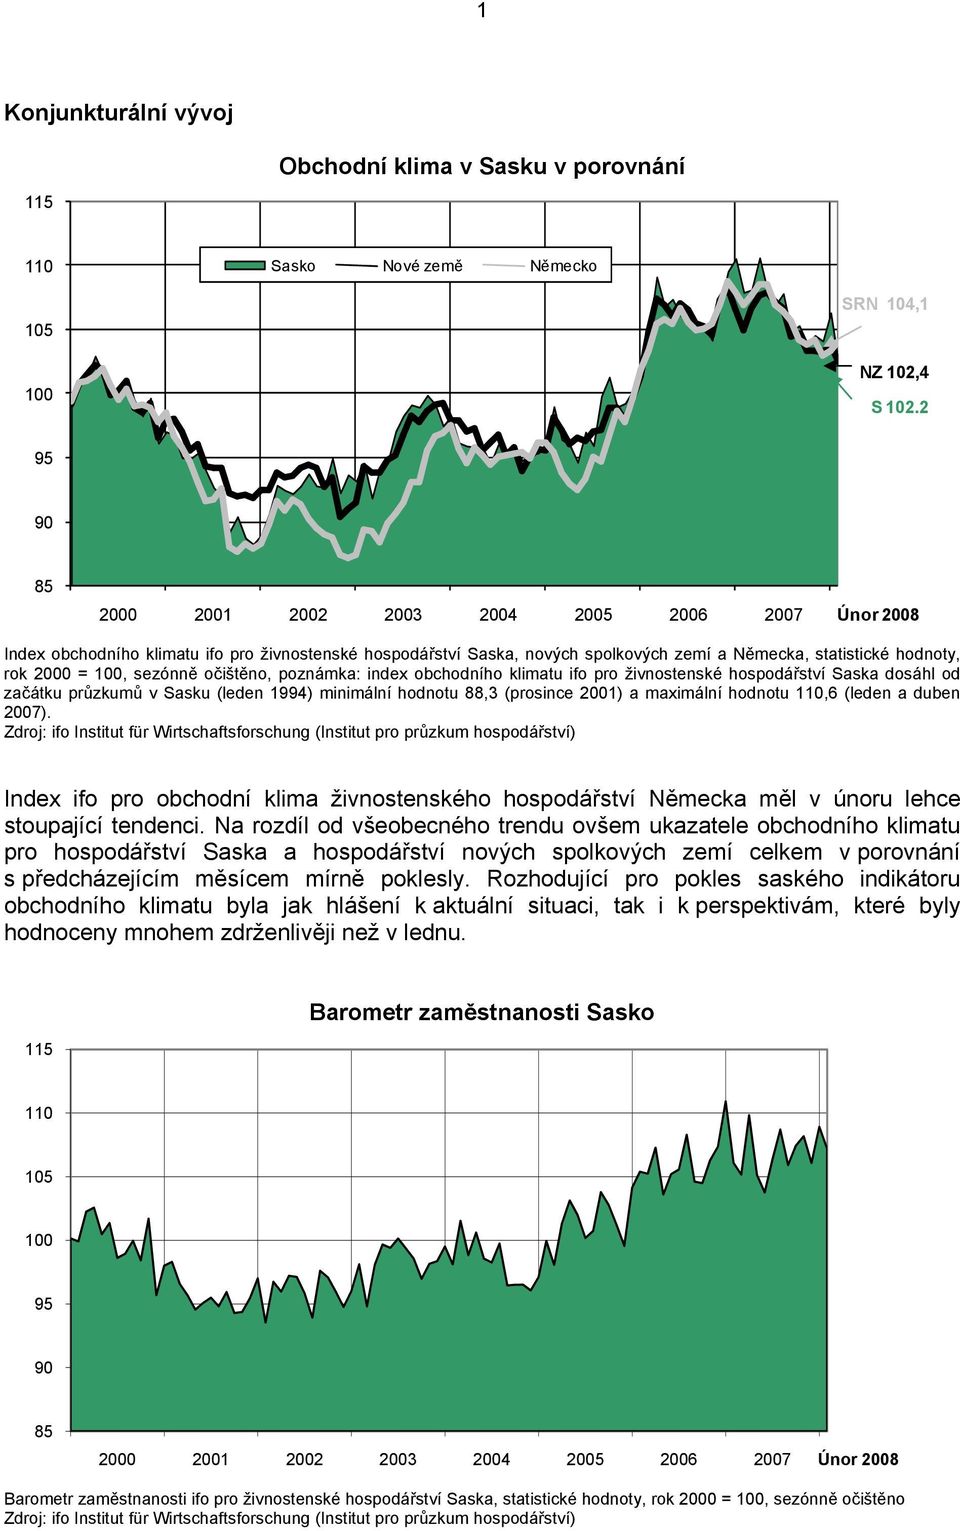 sezónně očištěno, poznámka: index obchodního klimatu ifo pro živnostenské hospodářství Saska dosáhl od začátku průzkumů v Sasku (leden 1994) minimální hodnotu 88,3 (prosince 2001) a maximální hodnotu